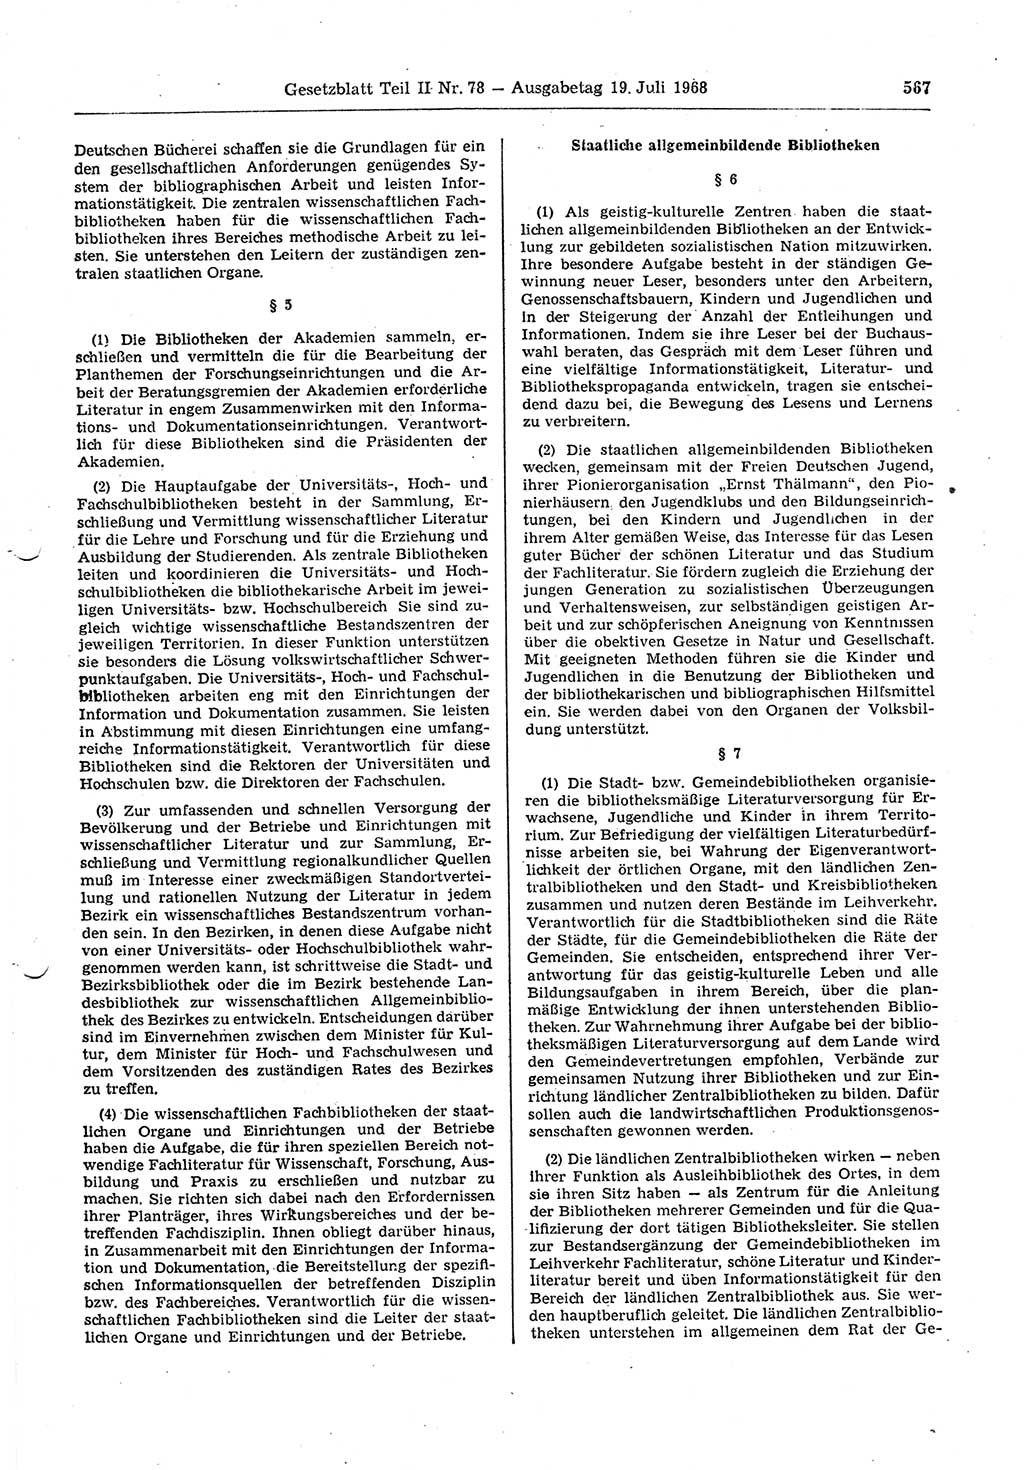 Gesetzblatt (GBl.) der Deutschen Demokratischen Republik (DDR) Teil ⅠⅠ 1968, Seite 567 (GBl. DDR ⅠⅠ 1968, S. 567)